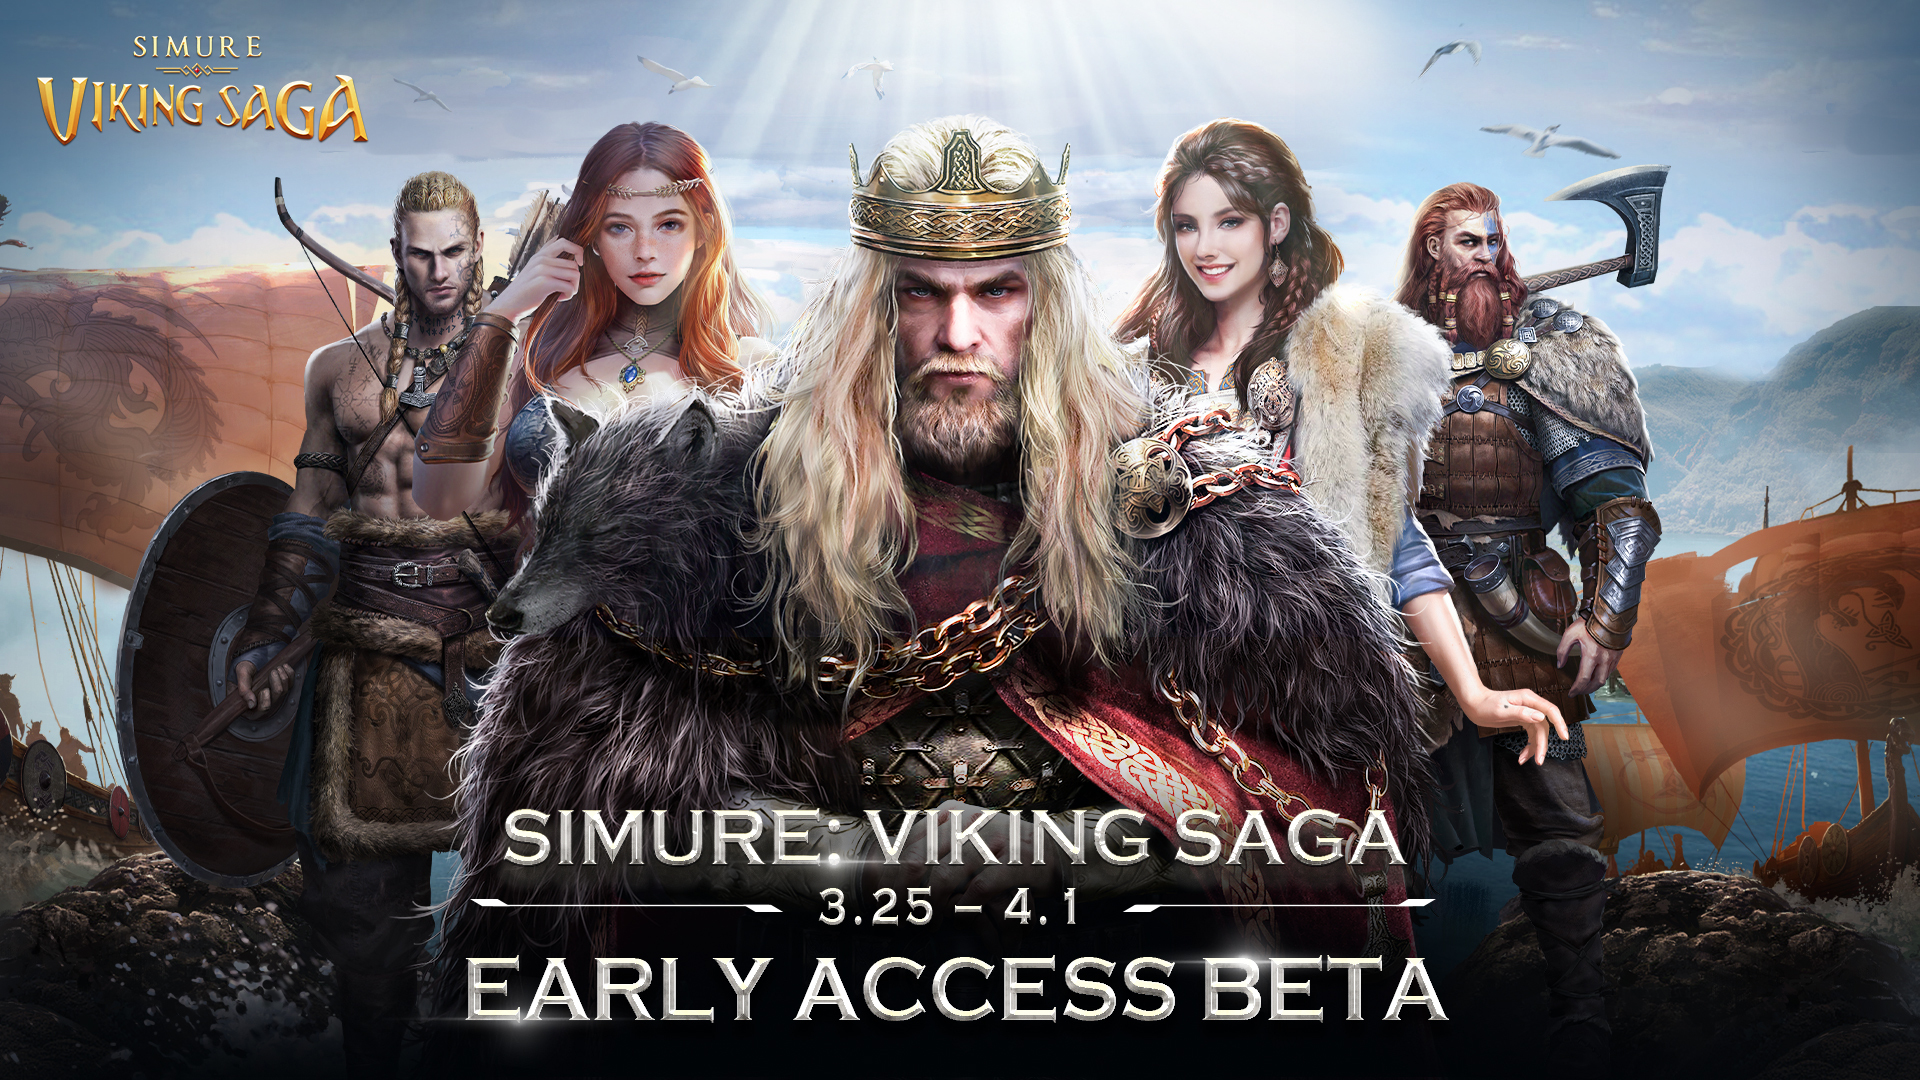 viking game now